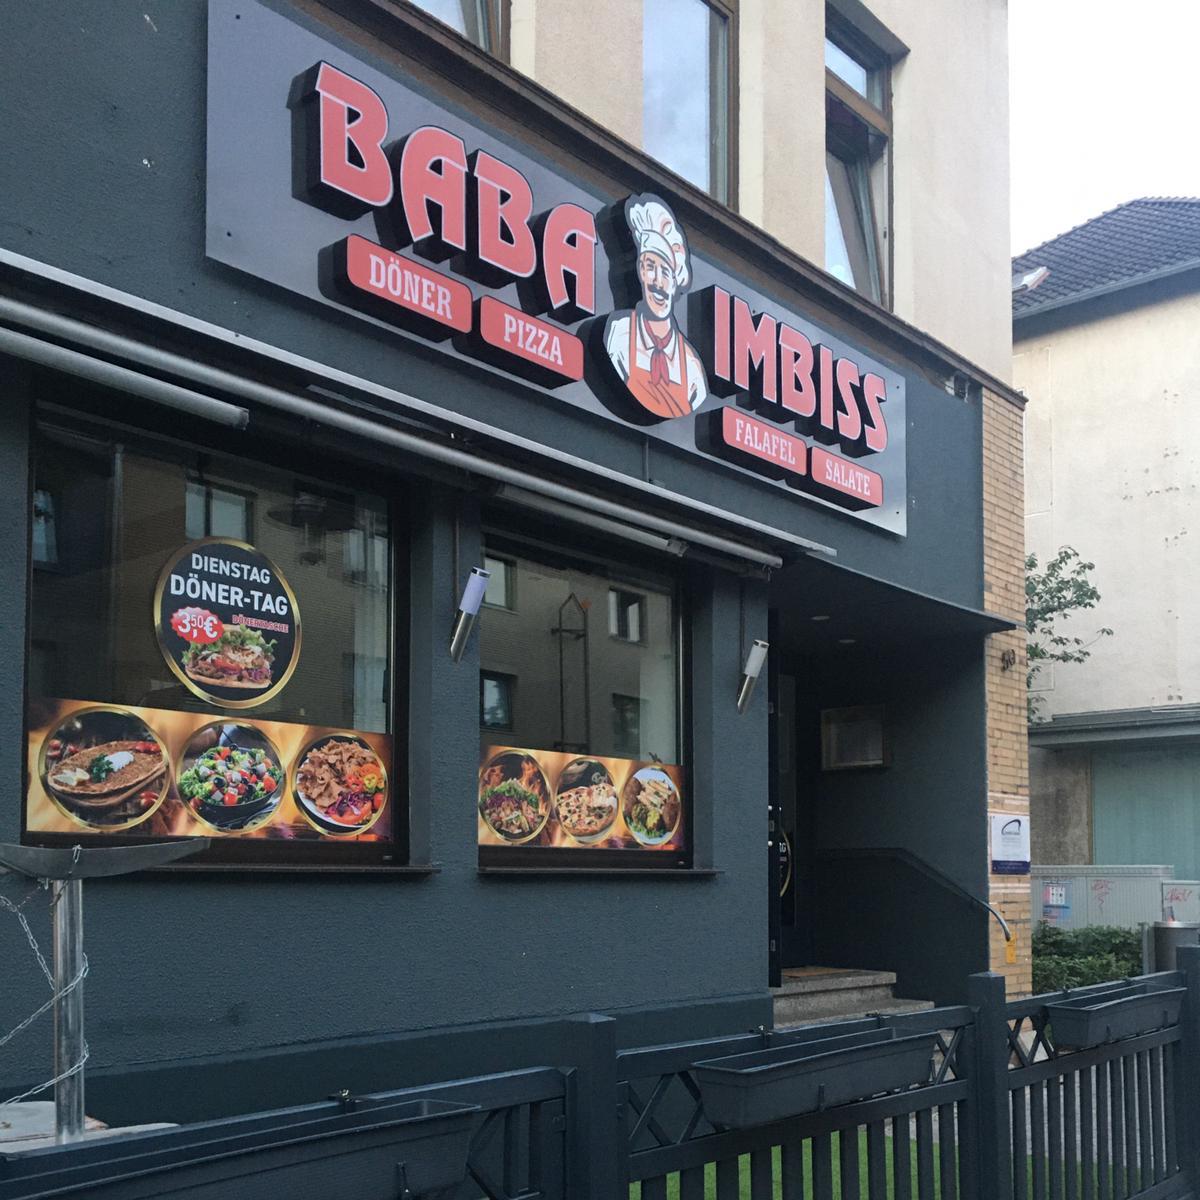 Restaurant "Baba Imbiss" in Lehrte